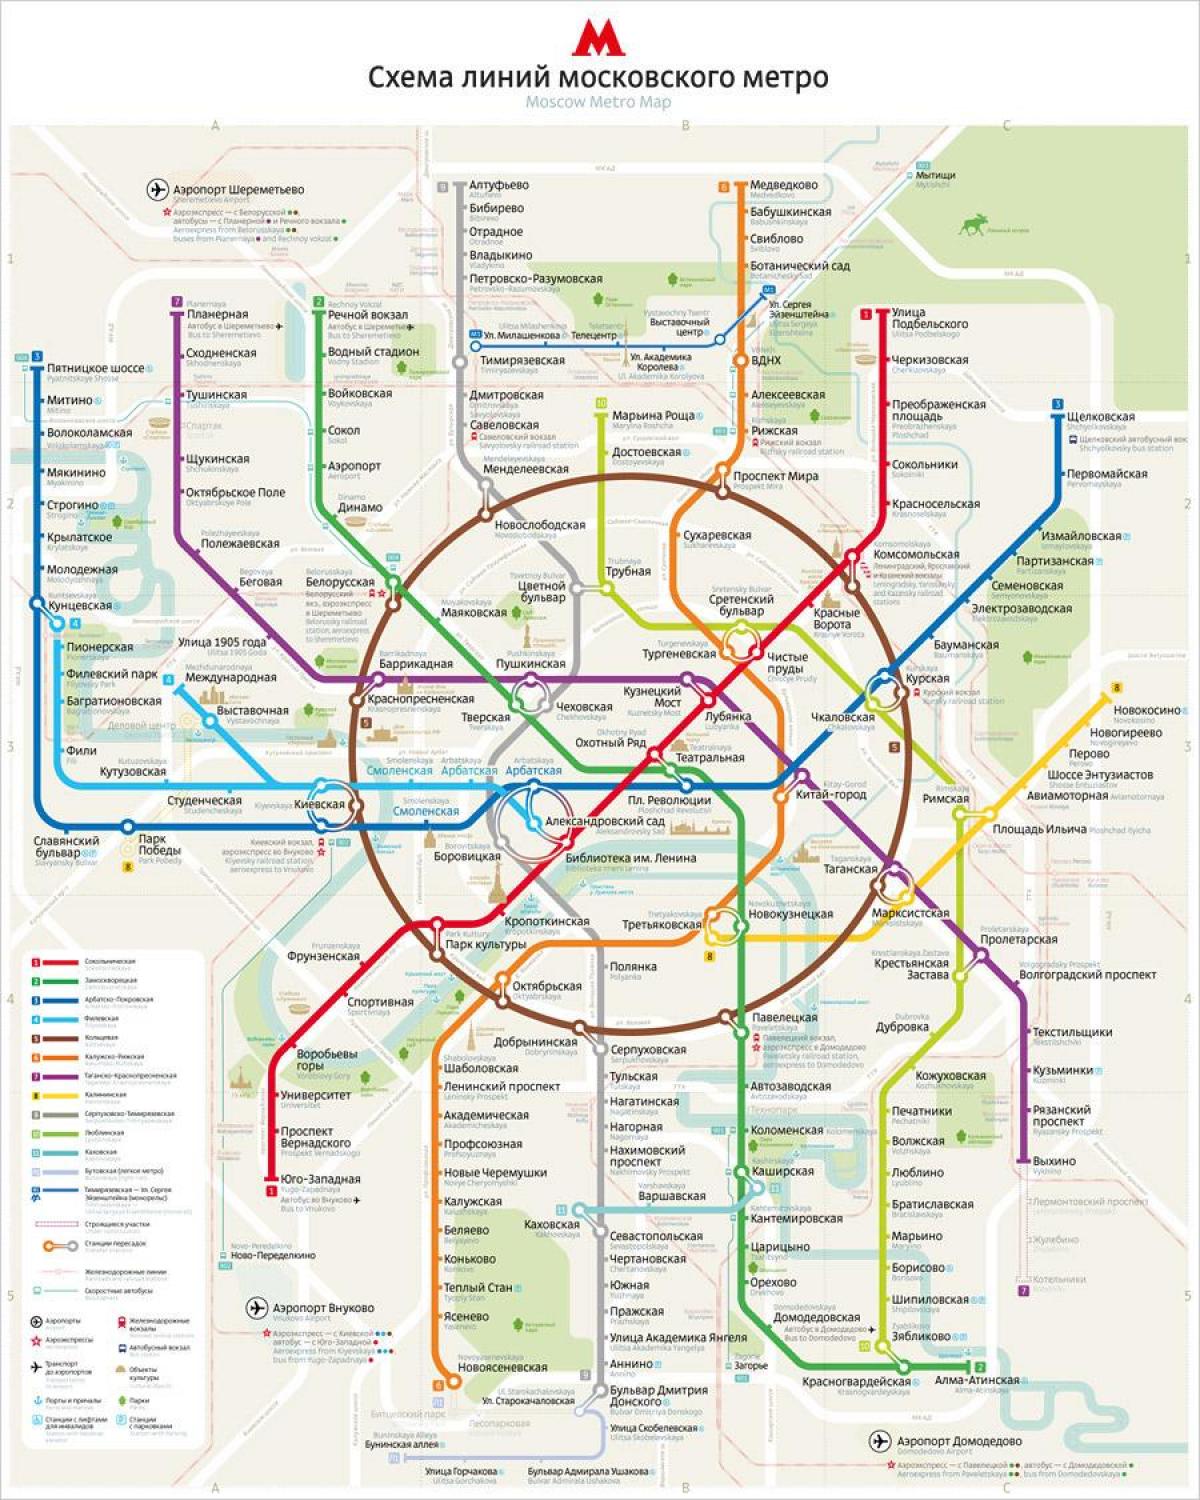 мапа московског метроа на енглеском и руском